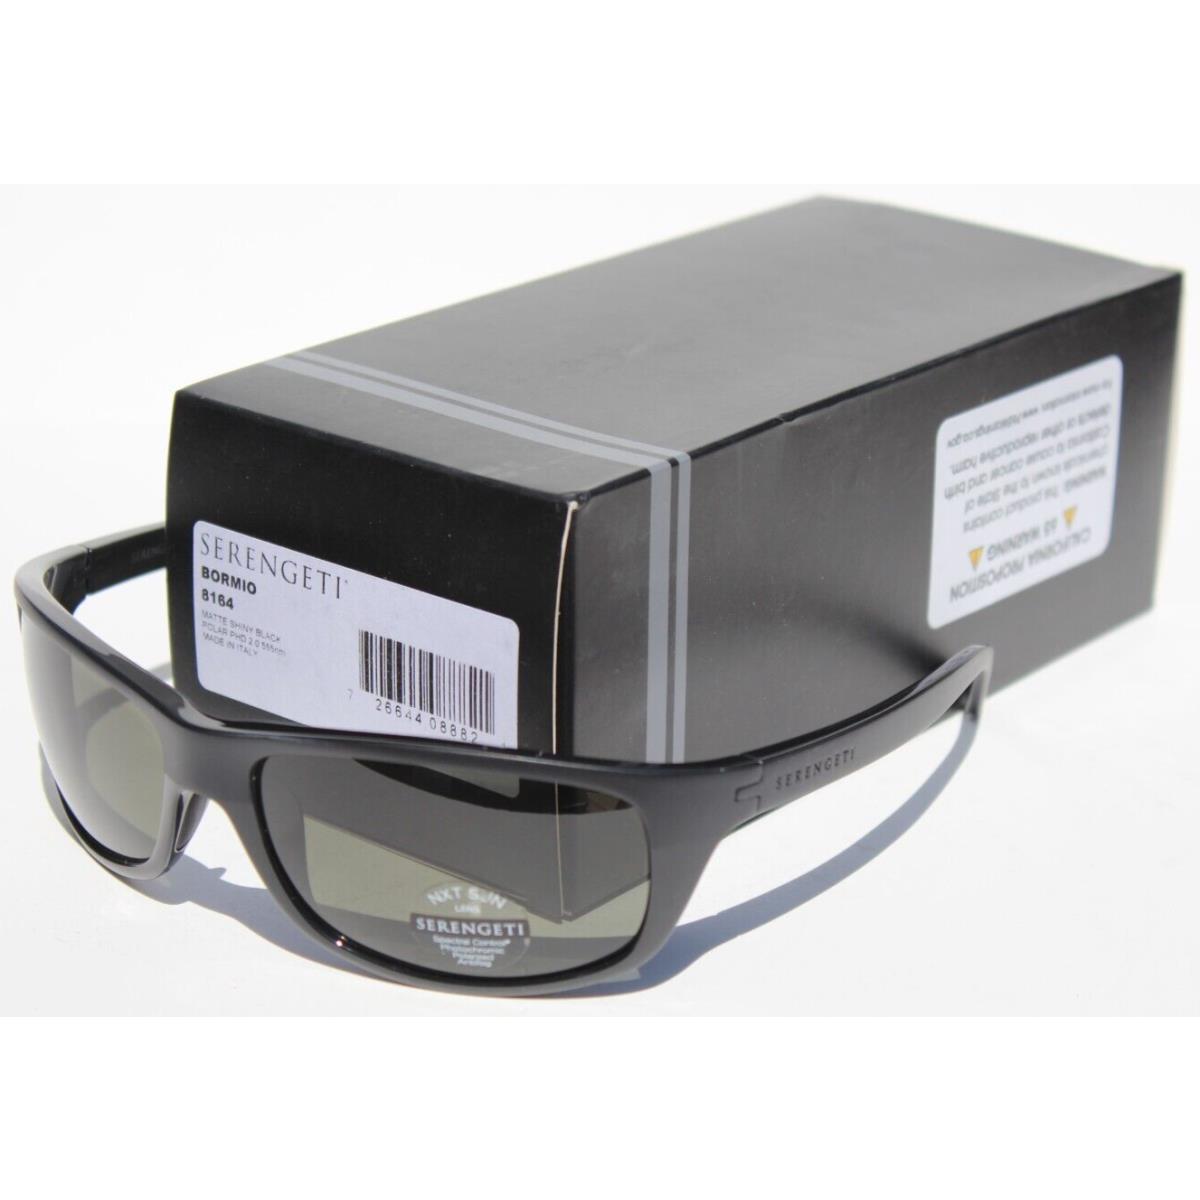 Serengeti Bormio Polarized Sunglasses Matte Shiny Black/phd 2.0 555nm 8164 Italy